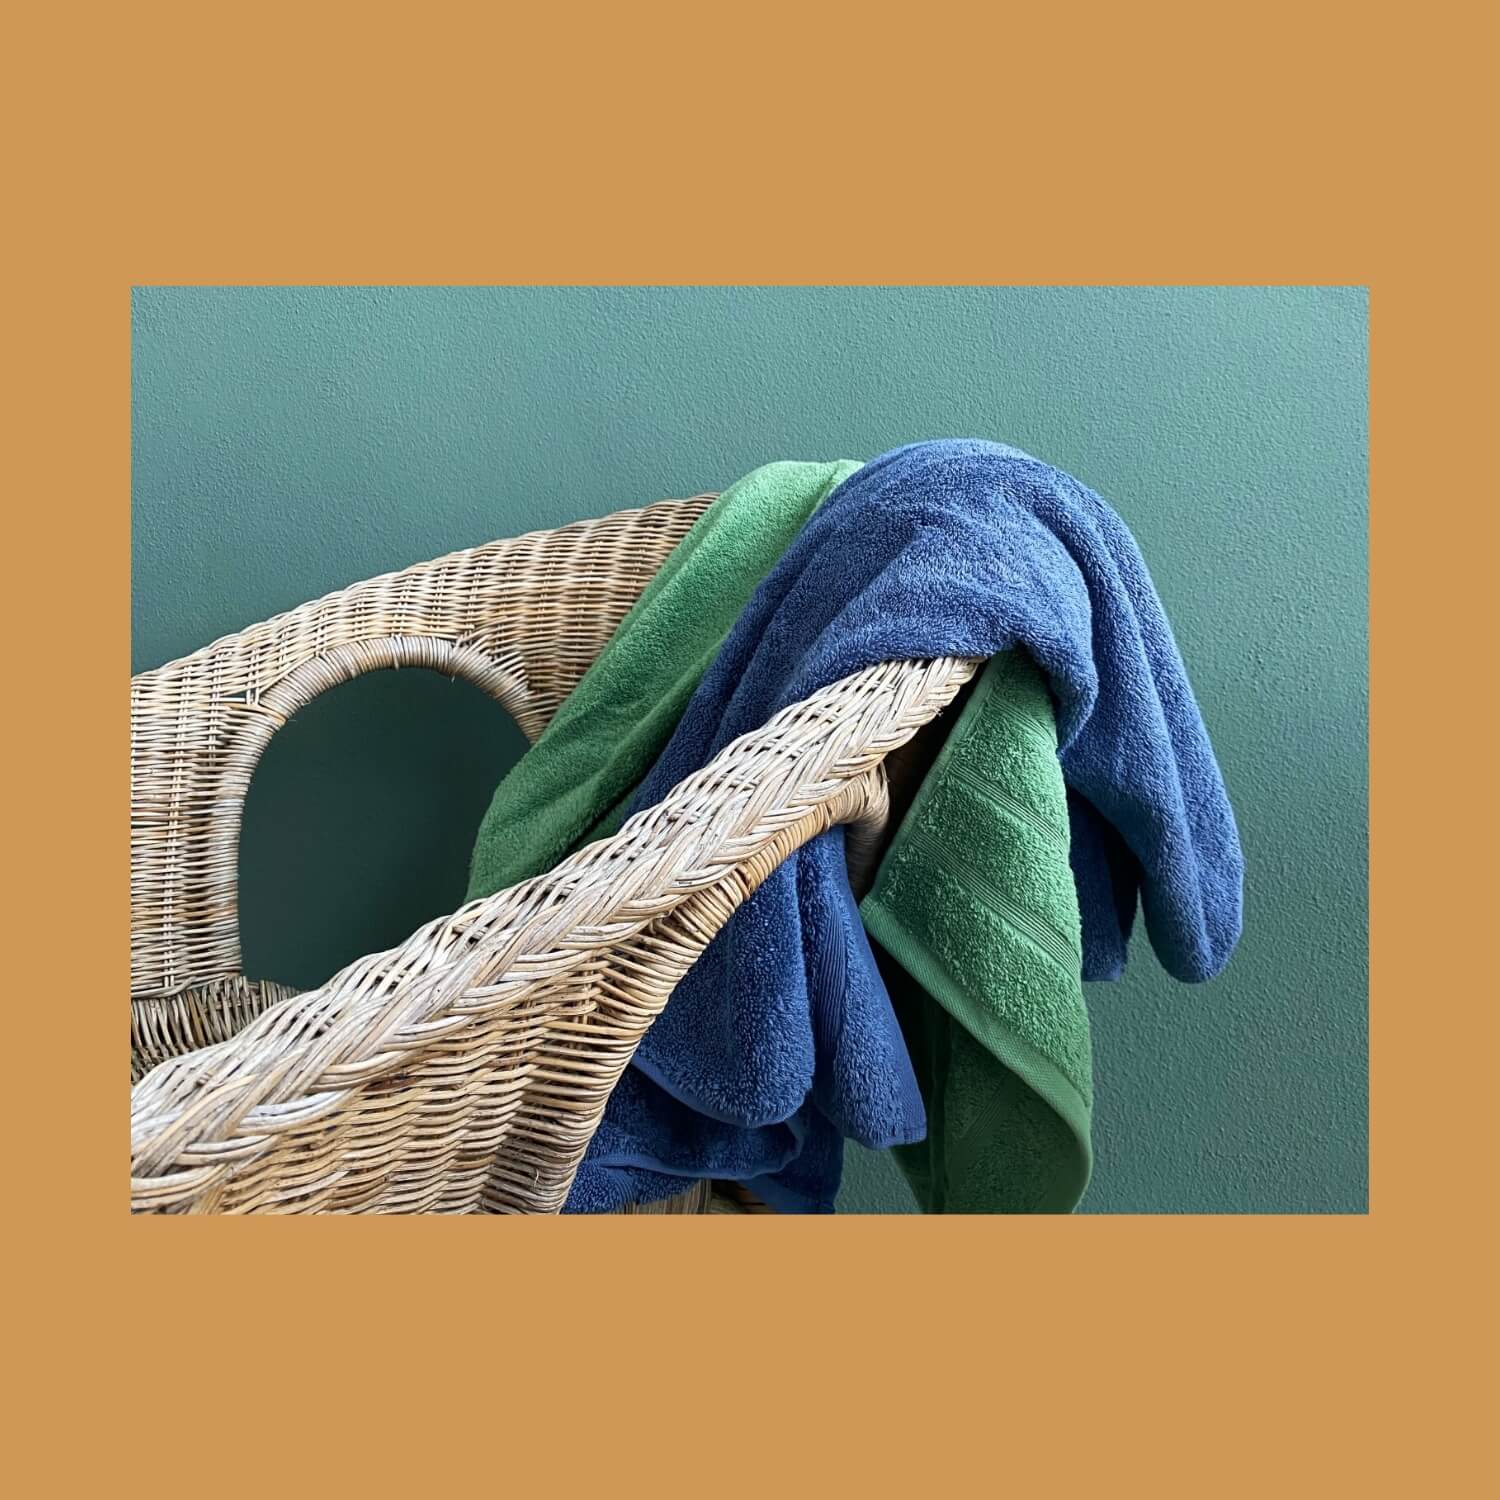 To håndklæder kastet henover en stol. Farverne på håndklæderne er grøn og mørkeblå